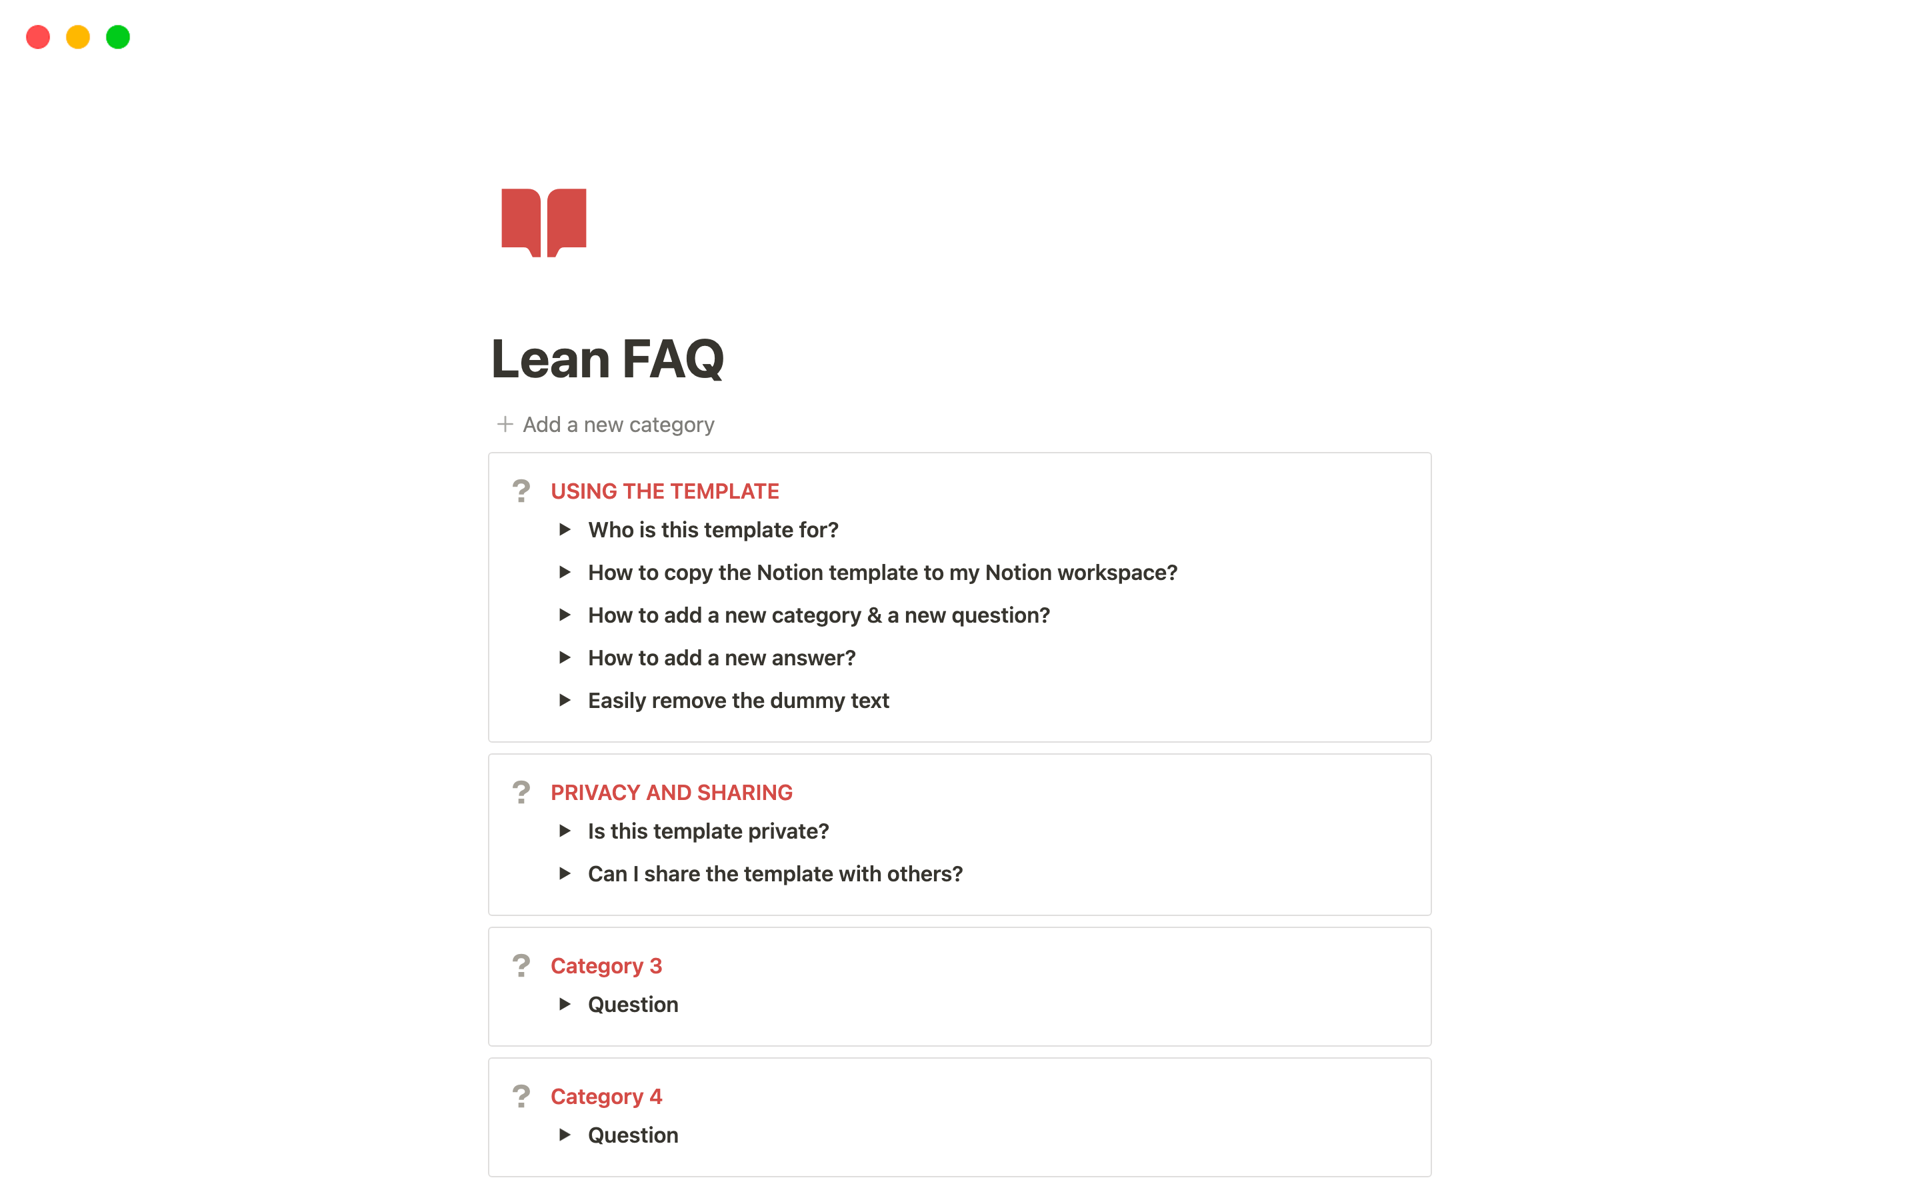 Uma prévia do modelo para Lean FAQ 